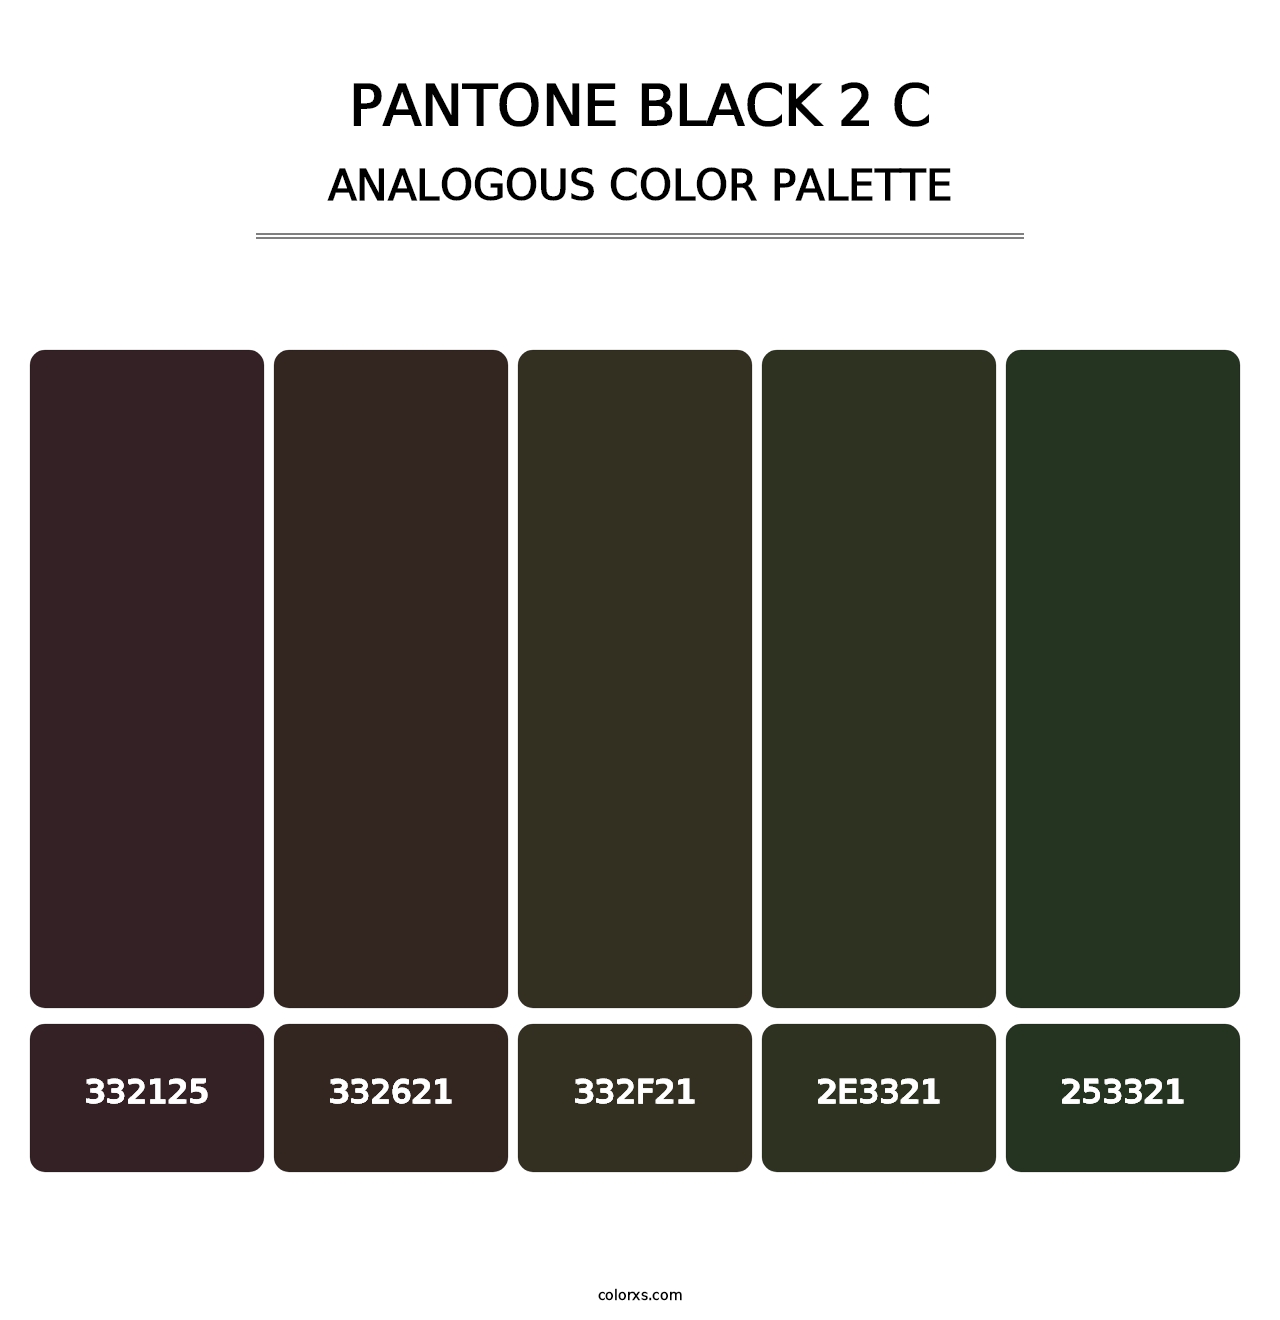 PANTONE Black 2 C - Analogous Color Palette